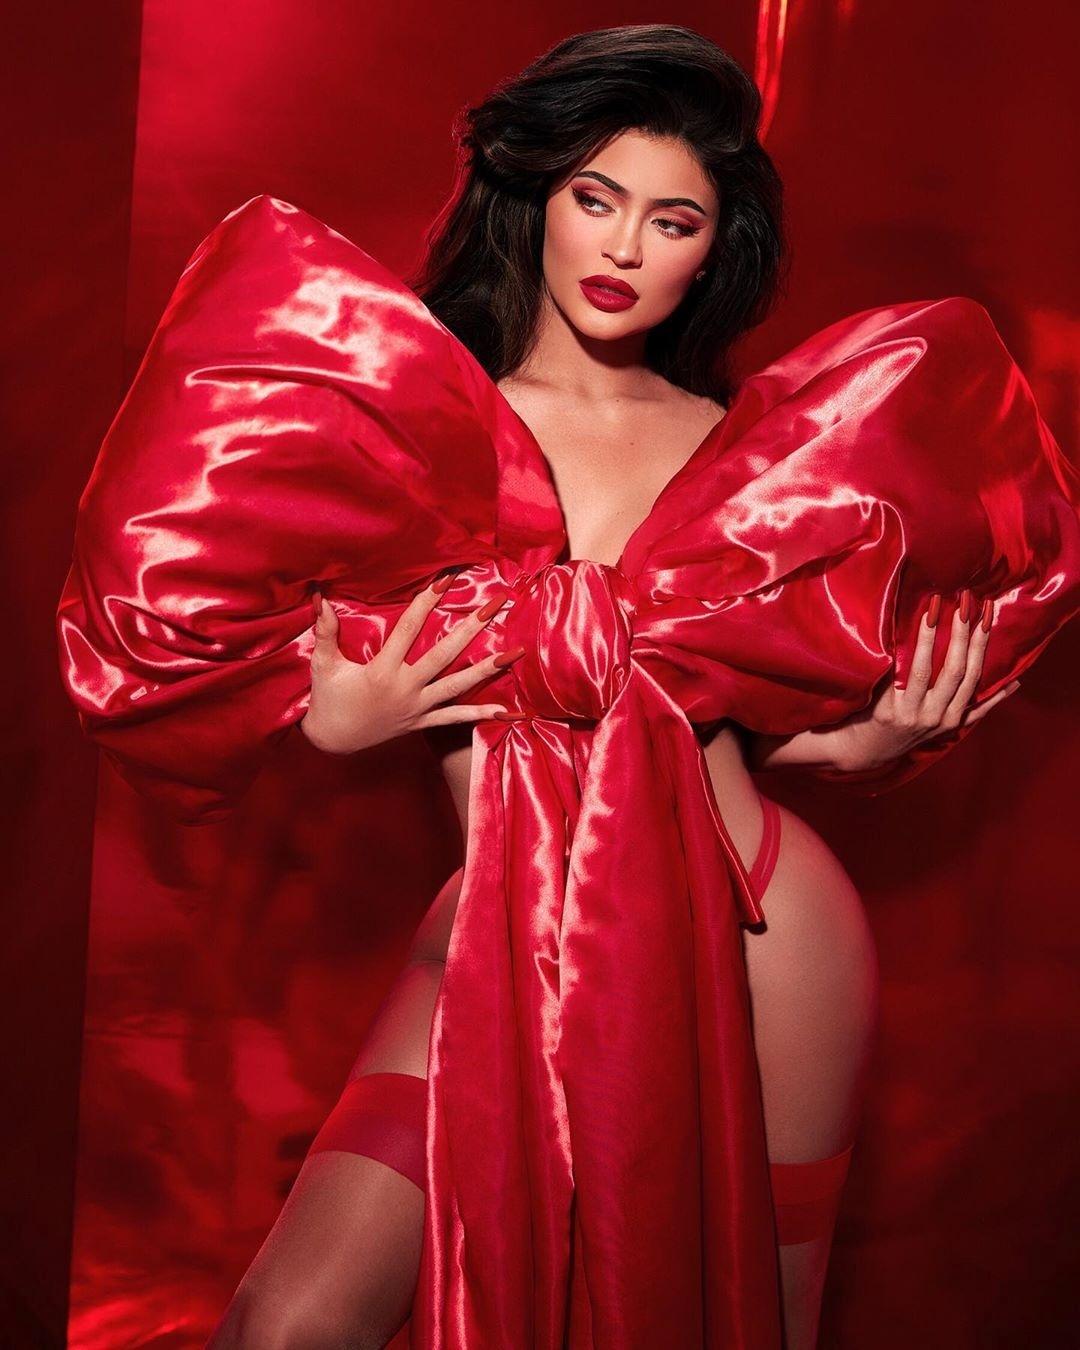 Legging transparente revela fio-dental vermelho de Kylie Jenner, Celebridades